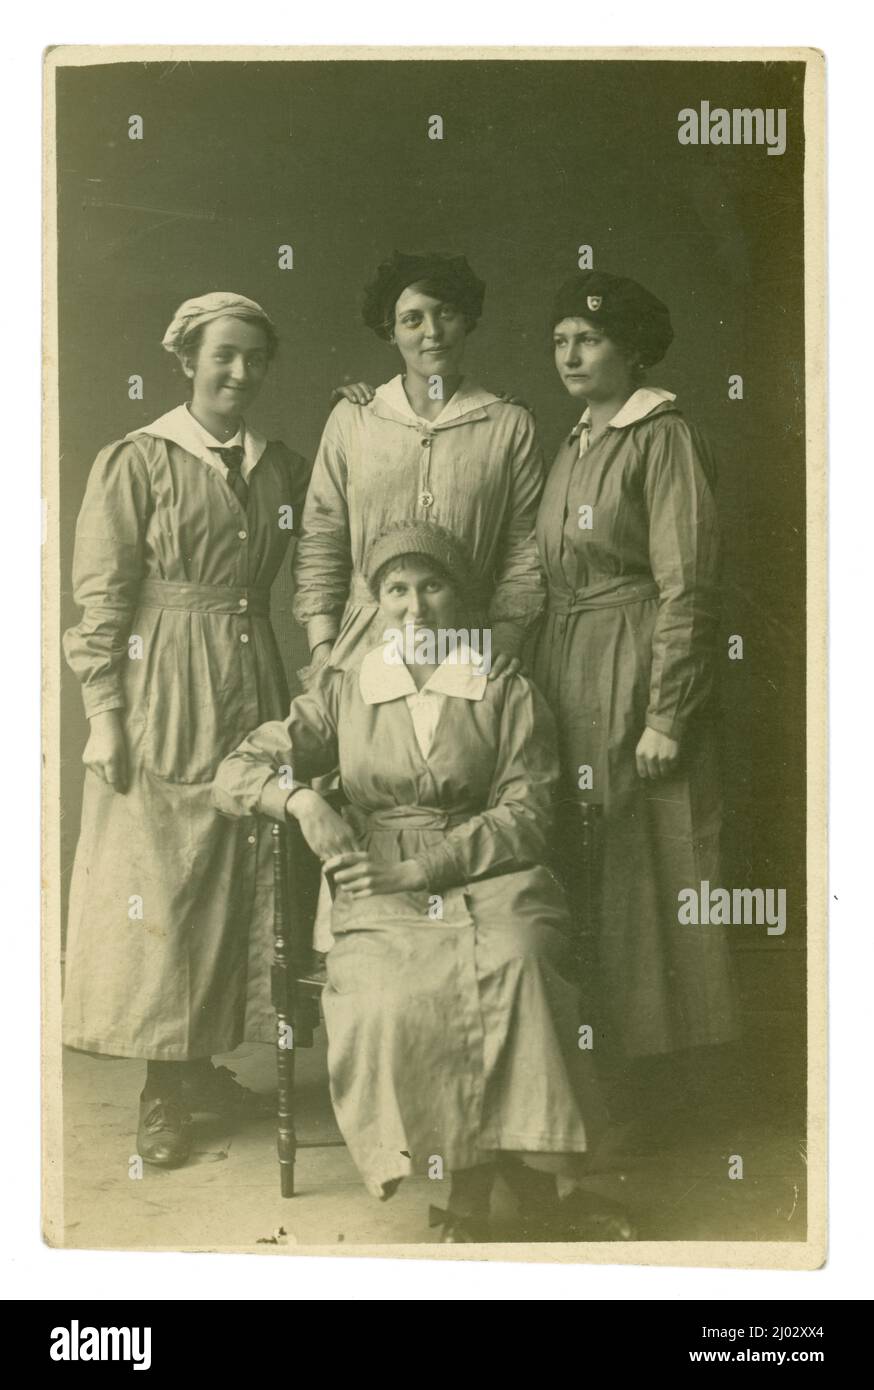 Originalpostkarte aus dem Jahr WW1 von 4 Arbeiterinnen, möglicherweise Munitionsarbeiterinnen, Fabrikarbeitern, 2 tragen das gleiche Mützenabzeichen (aber es handelt sich nicht um das übliche Abzeichen zum Kriegsdienst, das von vielen Munitionsarbeitern getragen wird), um 1916, Großbritannien Stockfoto